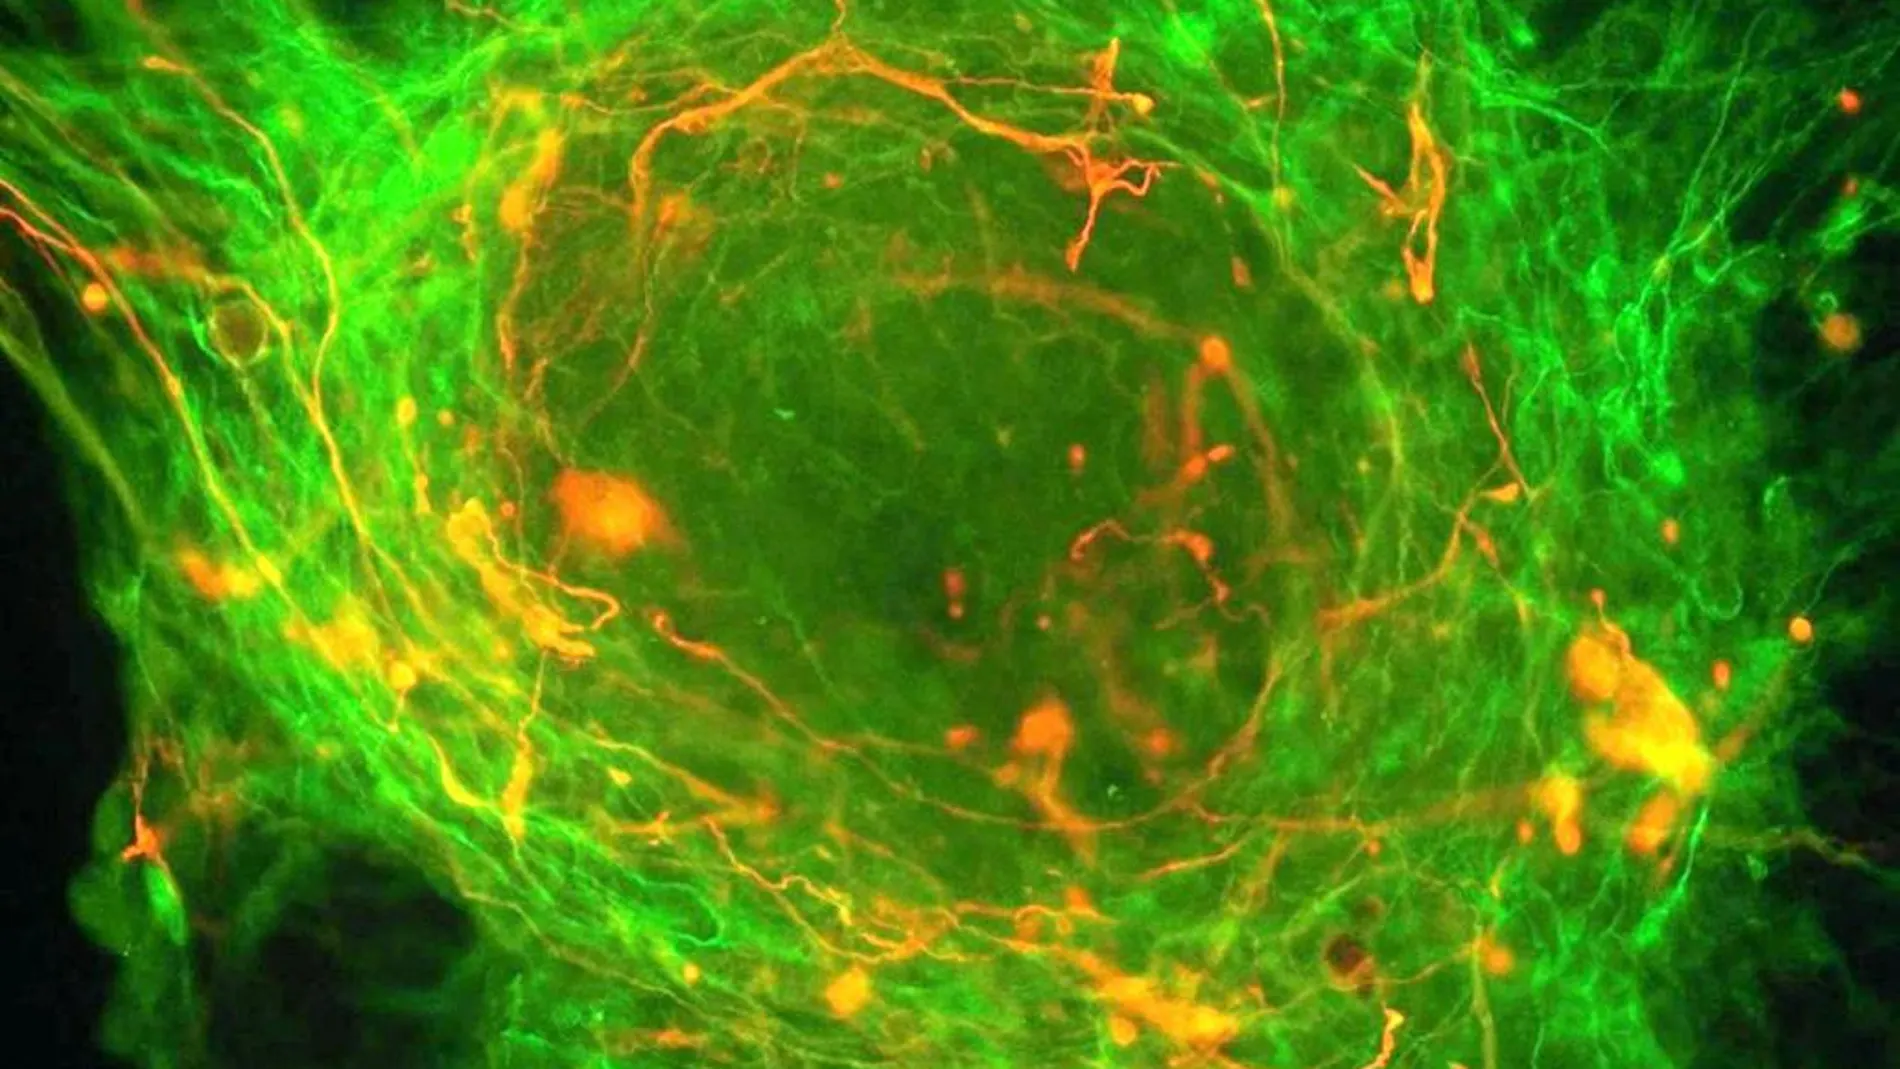 Una célula madre embrionaria, durante el proceso de conversión a neurona